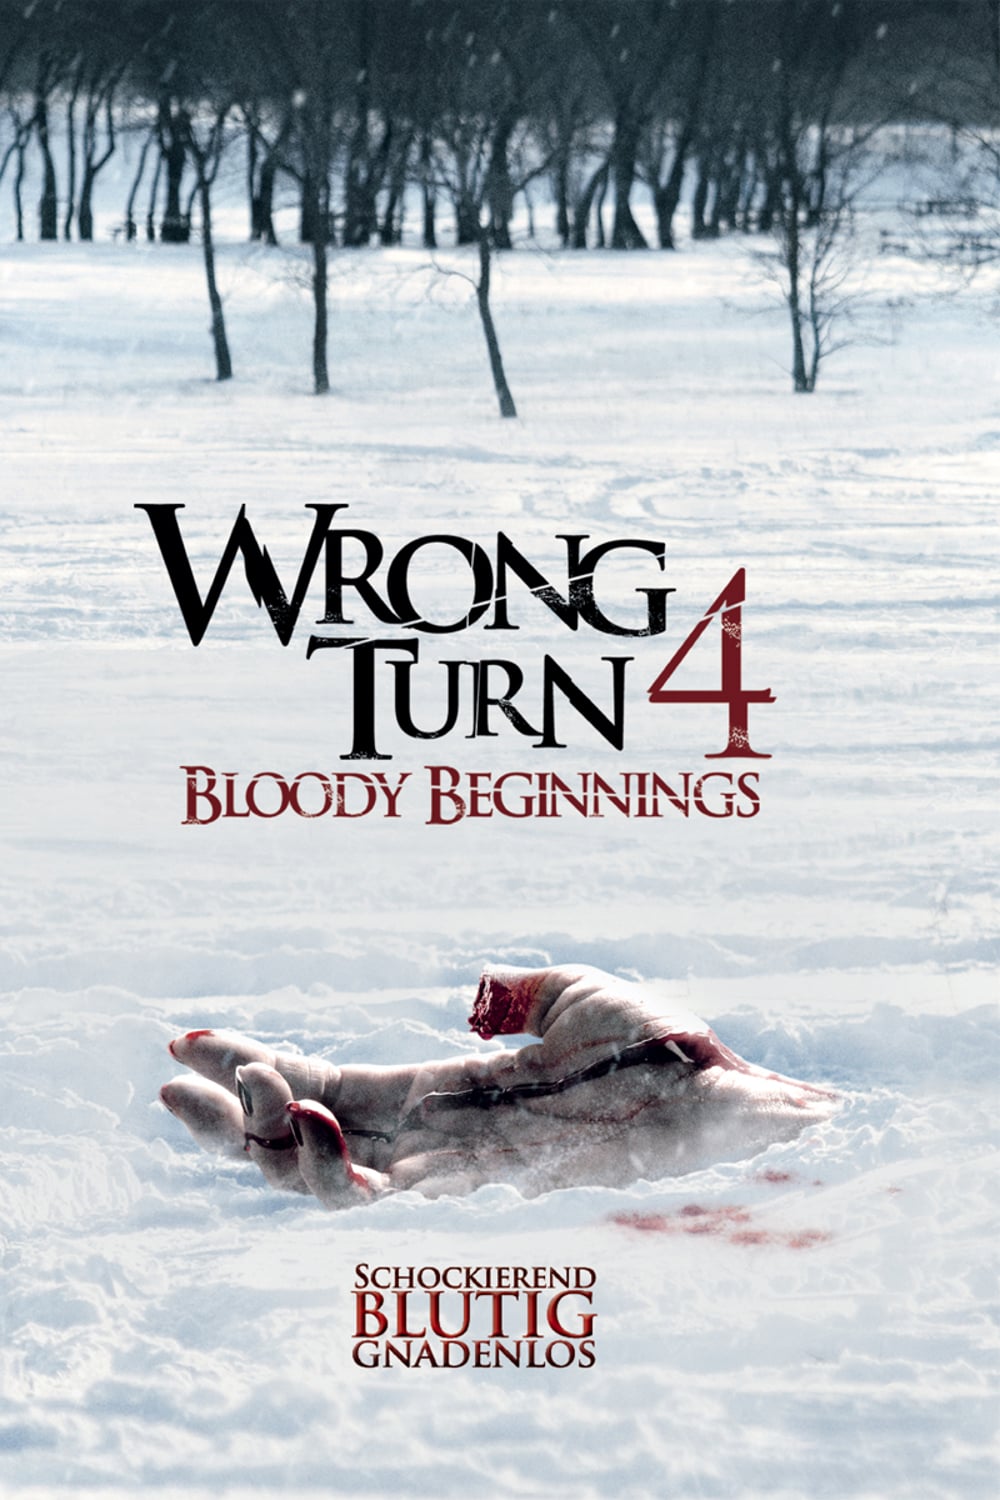 Plakat von "Wrong Turn 4: Bloody Beginnings"